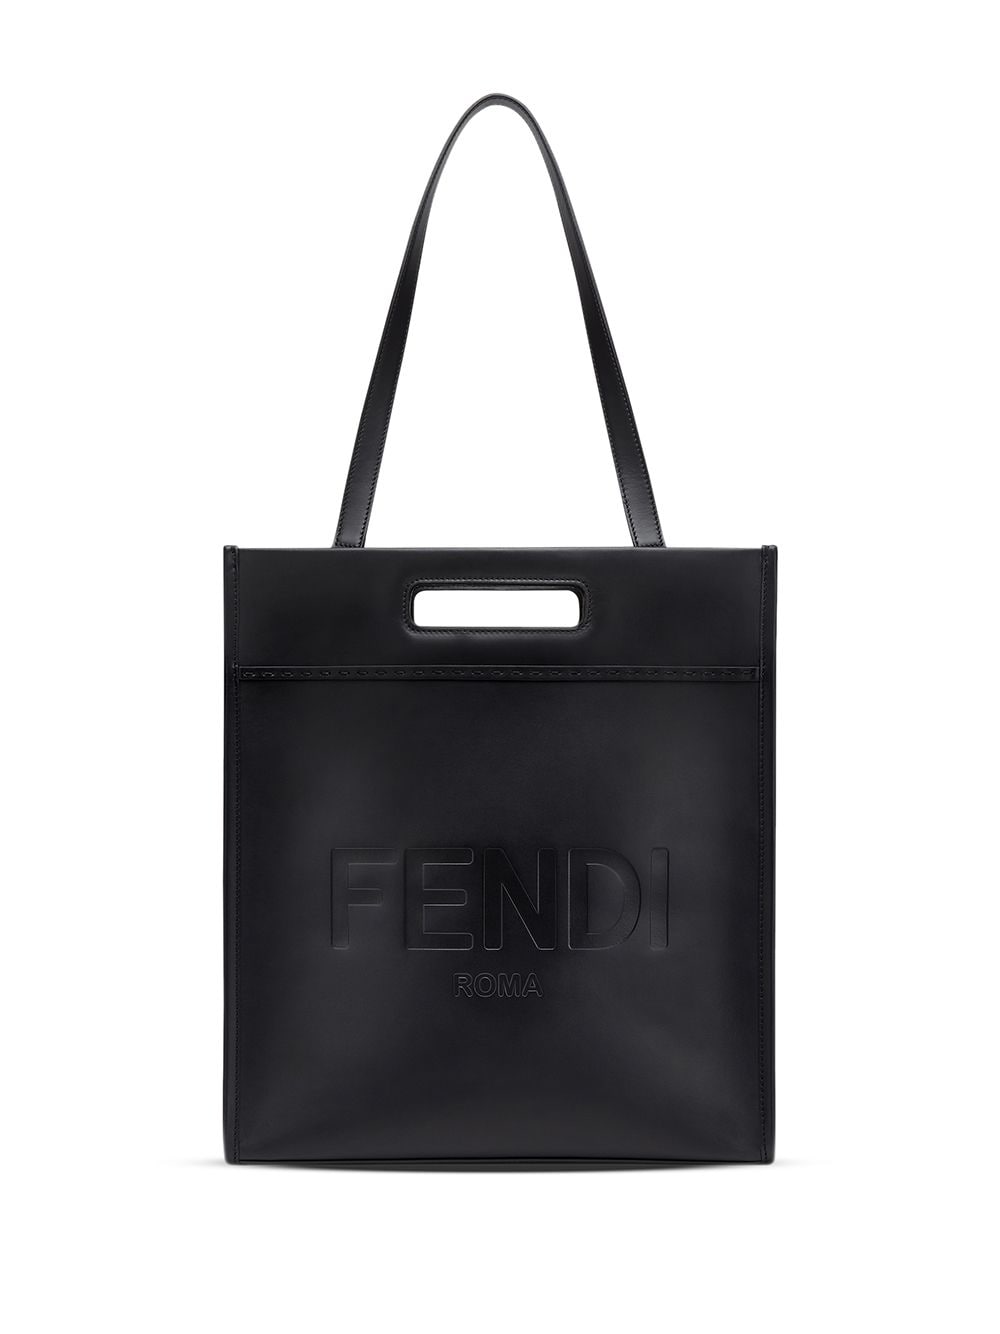 фото Fendi сумка-тоут n-s с тисненым логотипом